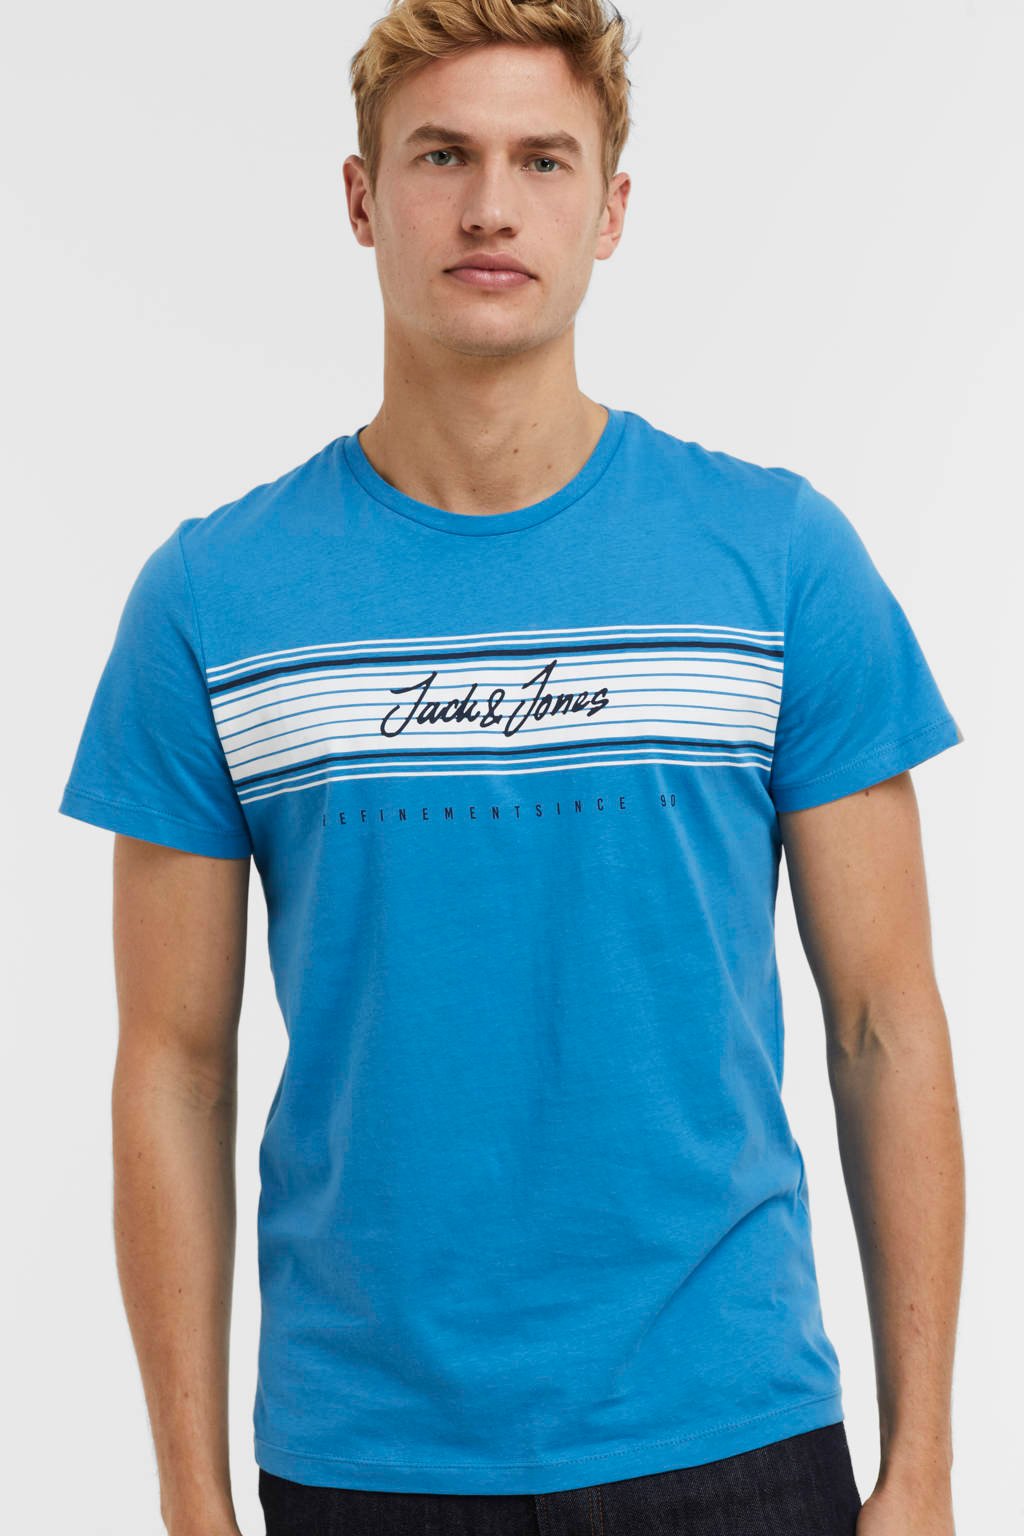 Blauwe heren JACK & JONES T-shirt van katoen met logo dessin, korte mouwen en ronde hals